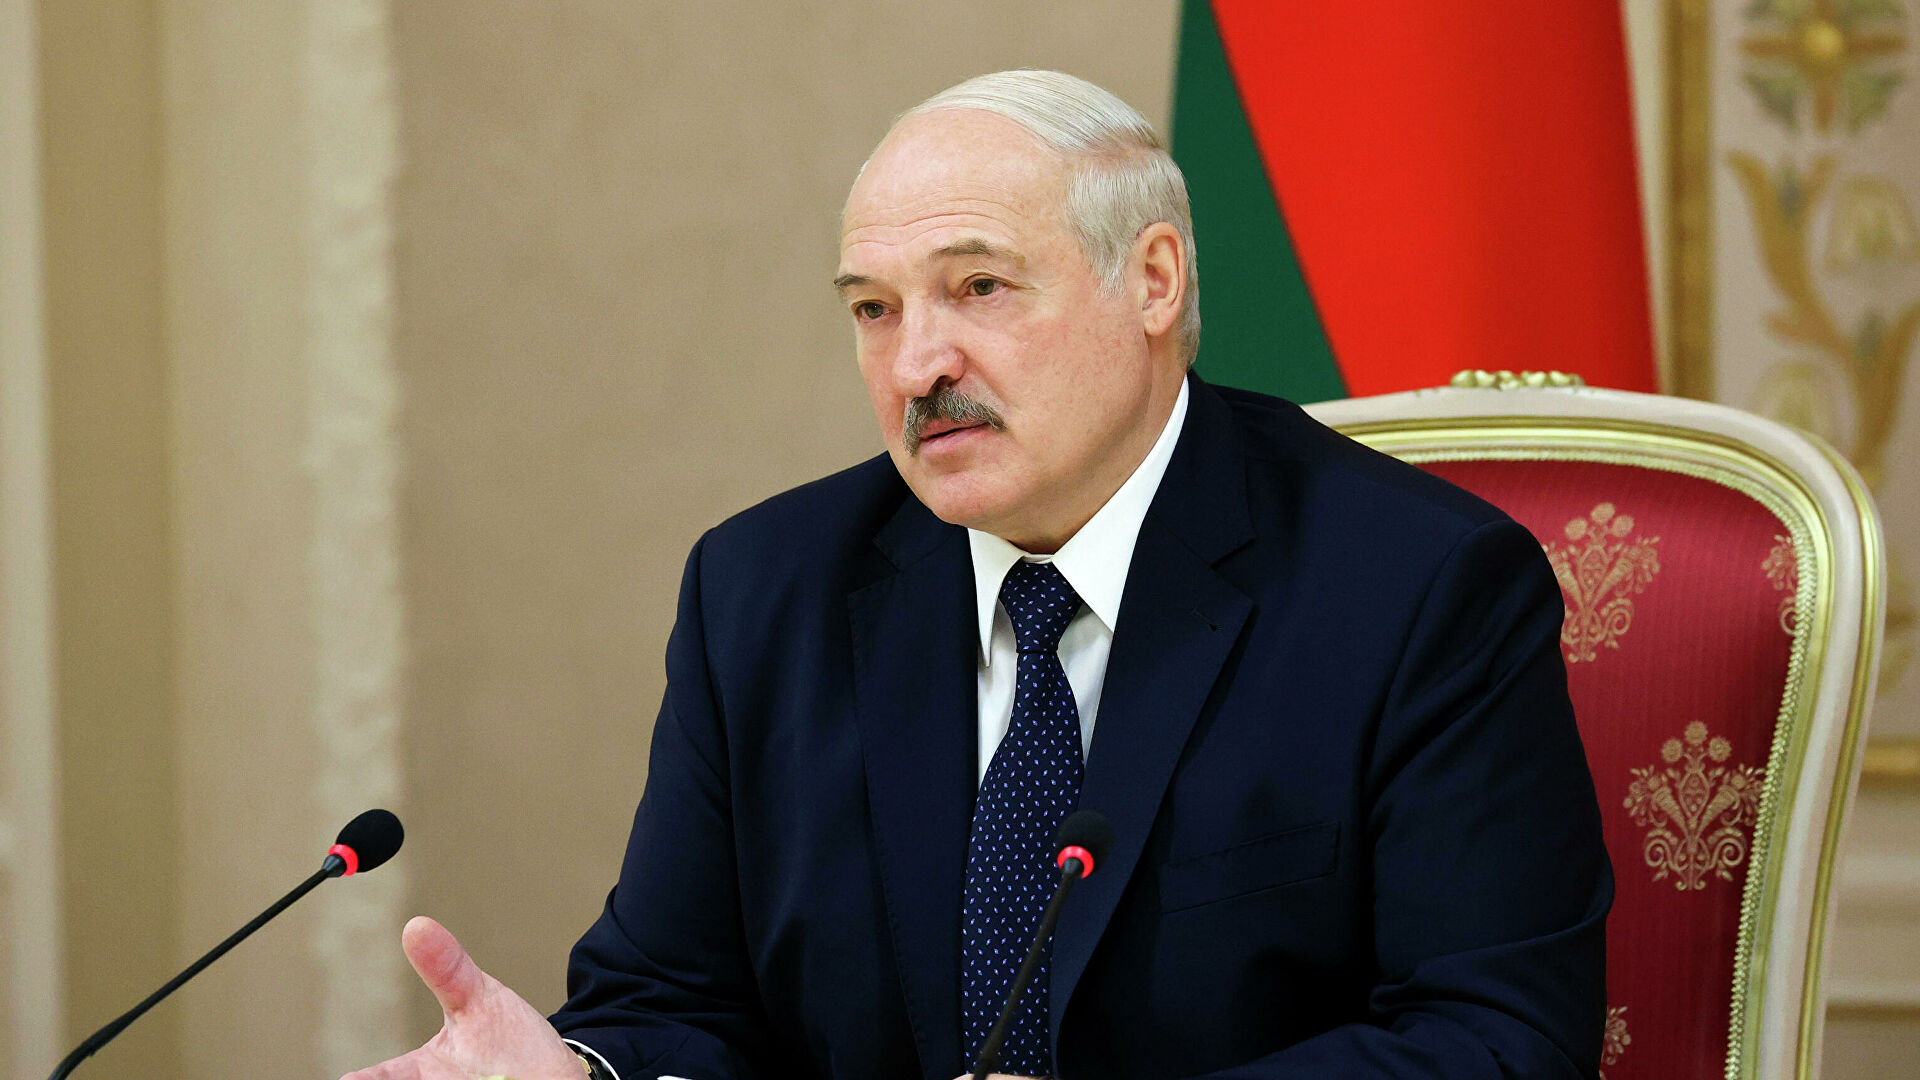 Лукашенко прокомментировал предложение Макрона уйти в отставку и посоветовал заняться своими делами